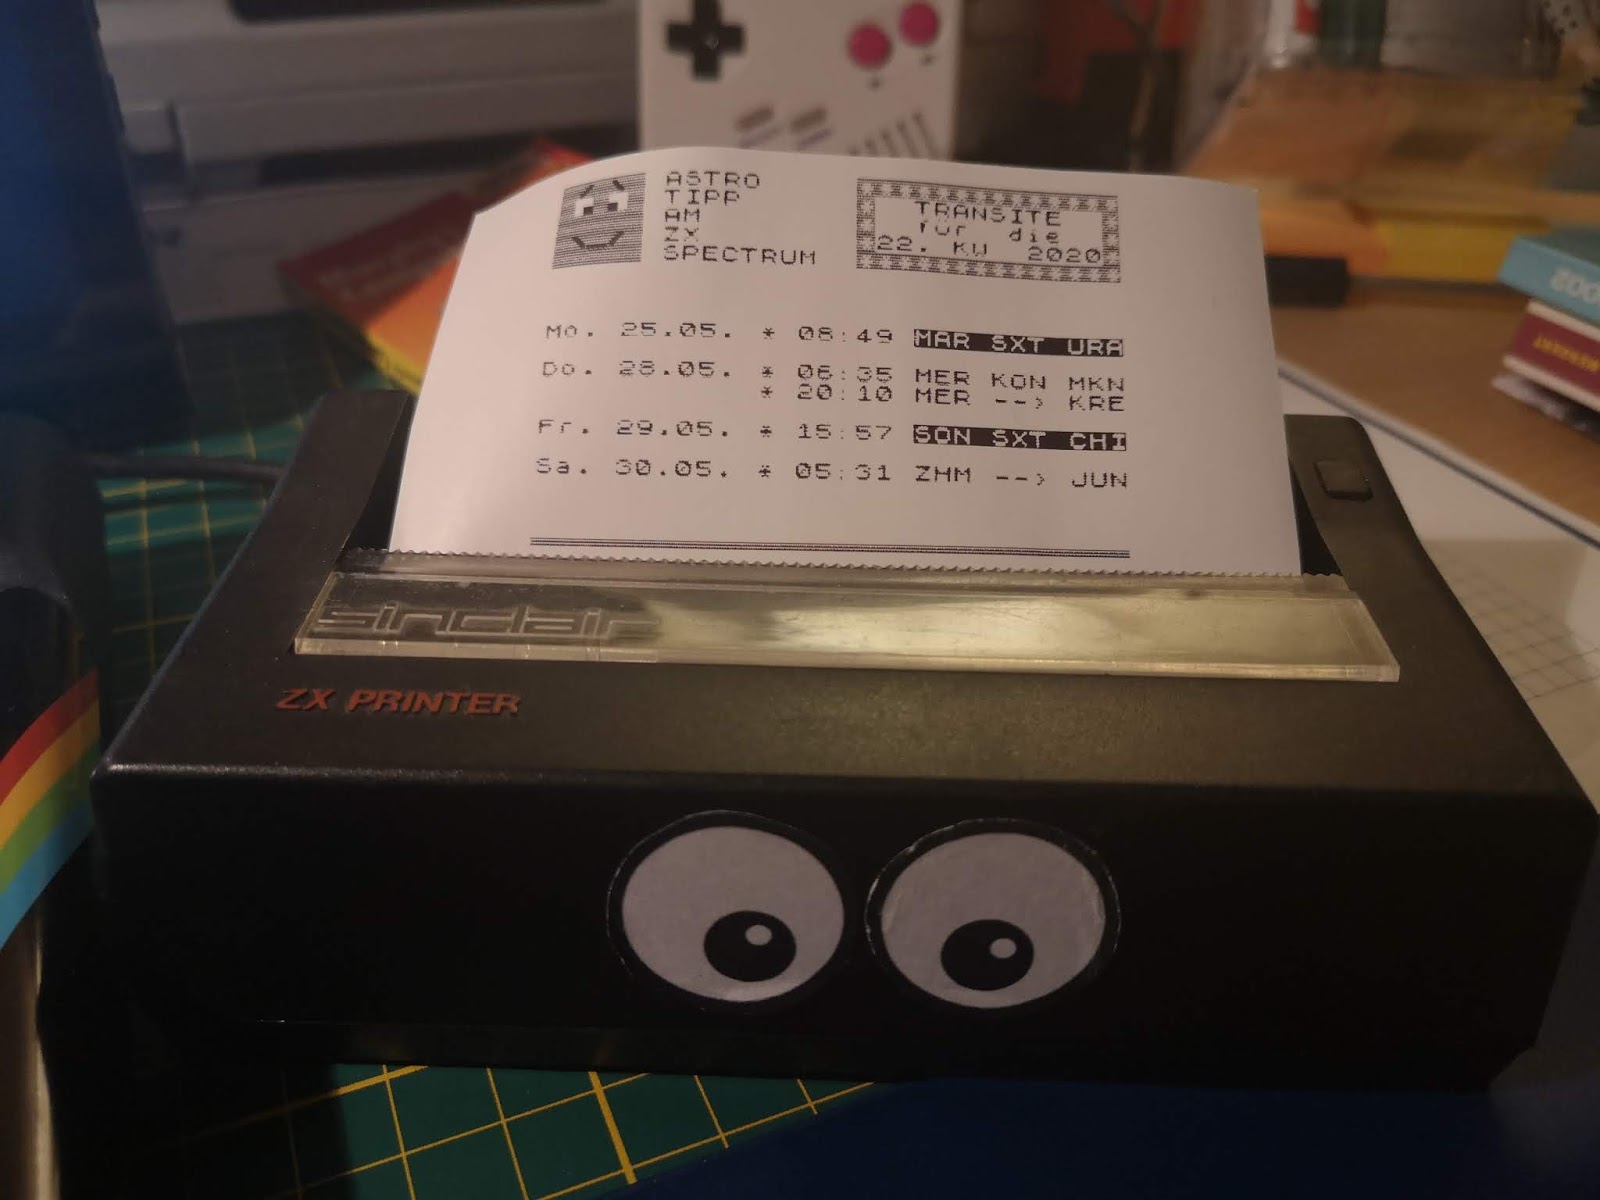 Astro-Tipps dieser Kalenderwoche am ZX Printer ausgedruckt